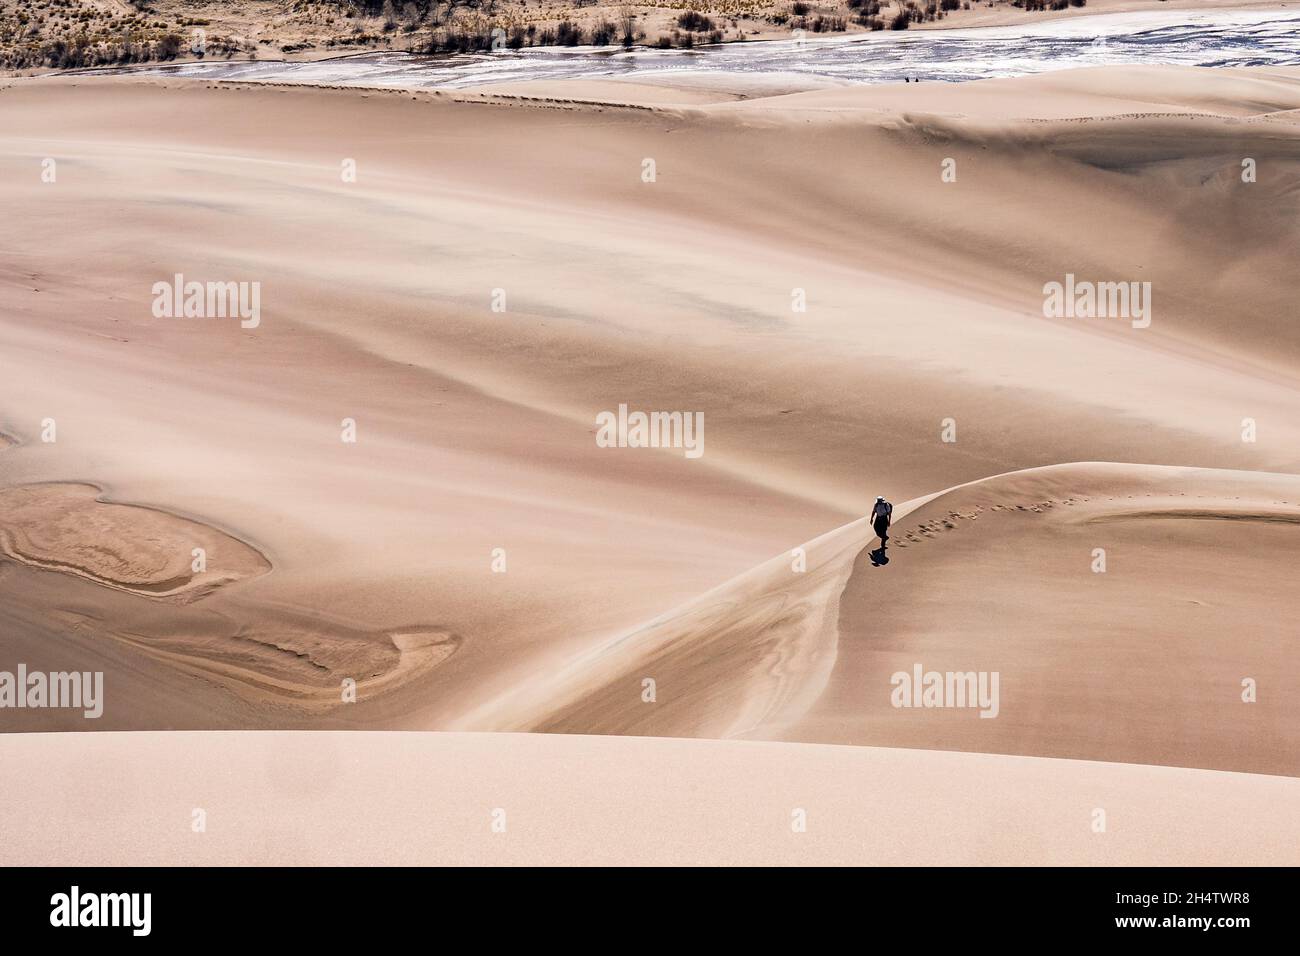 Mosca, CO - 24. April 2021: Ein einsamer Wanderer spaziert allein durch die Dünen im Great Sand Dunes National Park Stockfoto